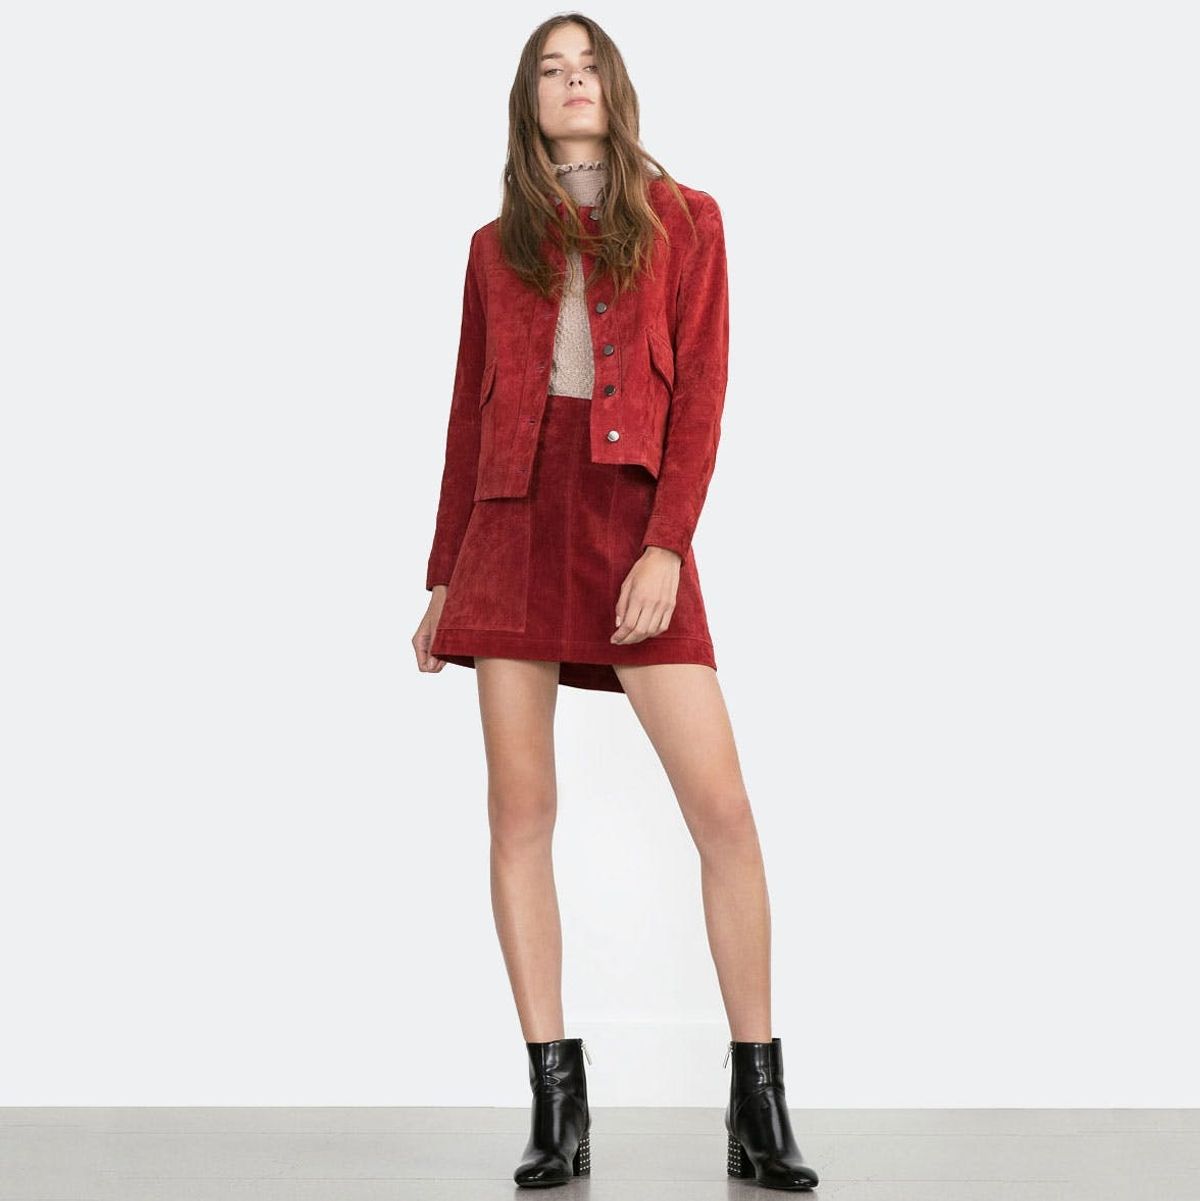 Anthro to Zara: 26 Fall Wardrobe Essentials for Under $100